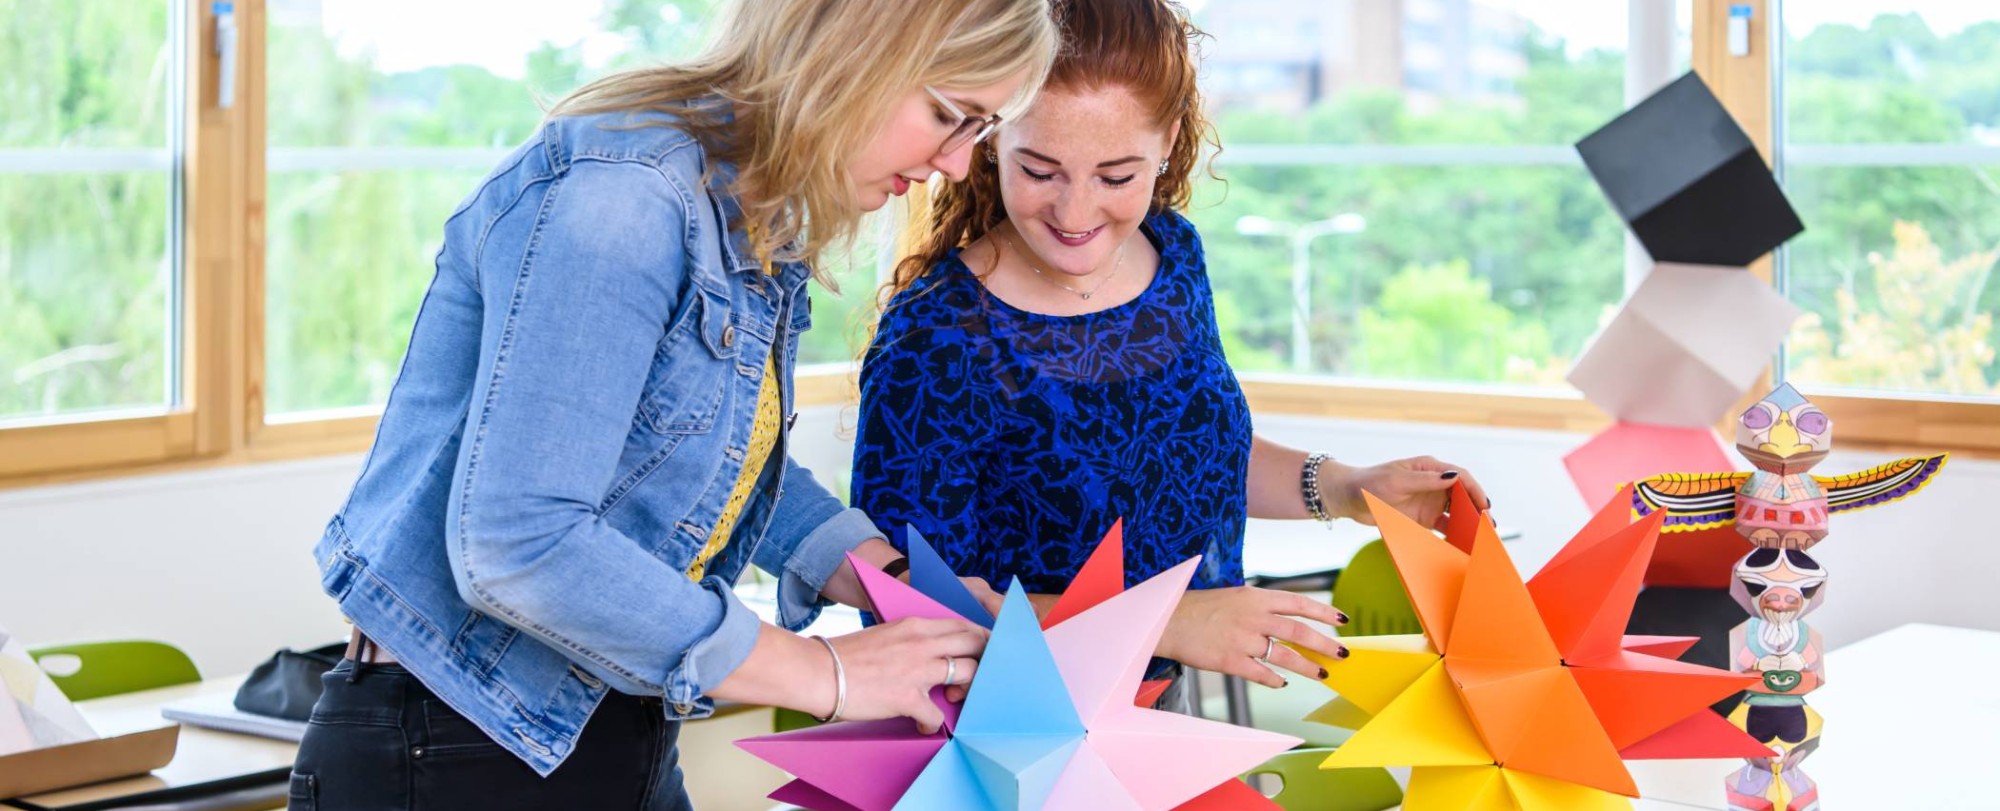 Twee studenten maken in een klaslokaal een papieren ster met allemaal verschillende kleuren.